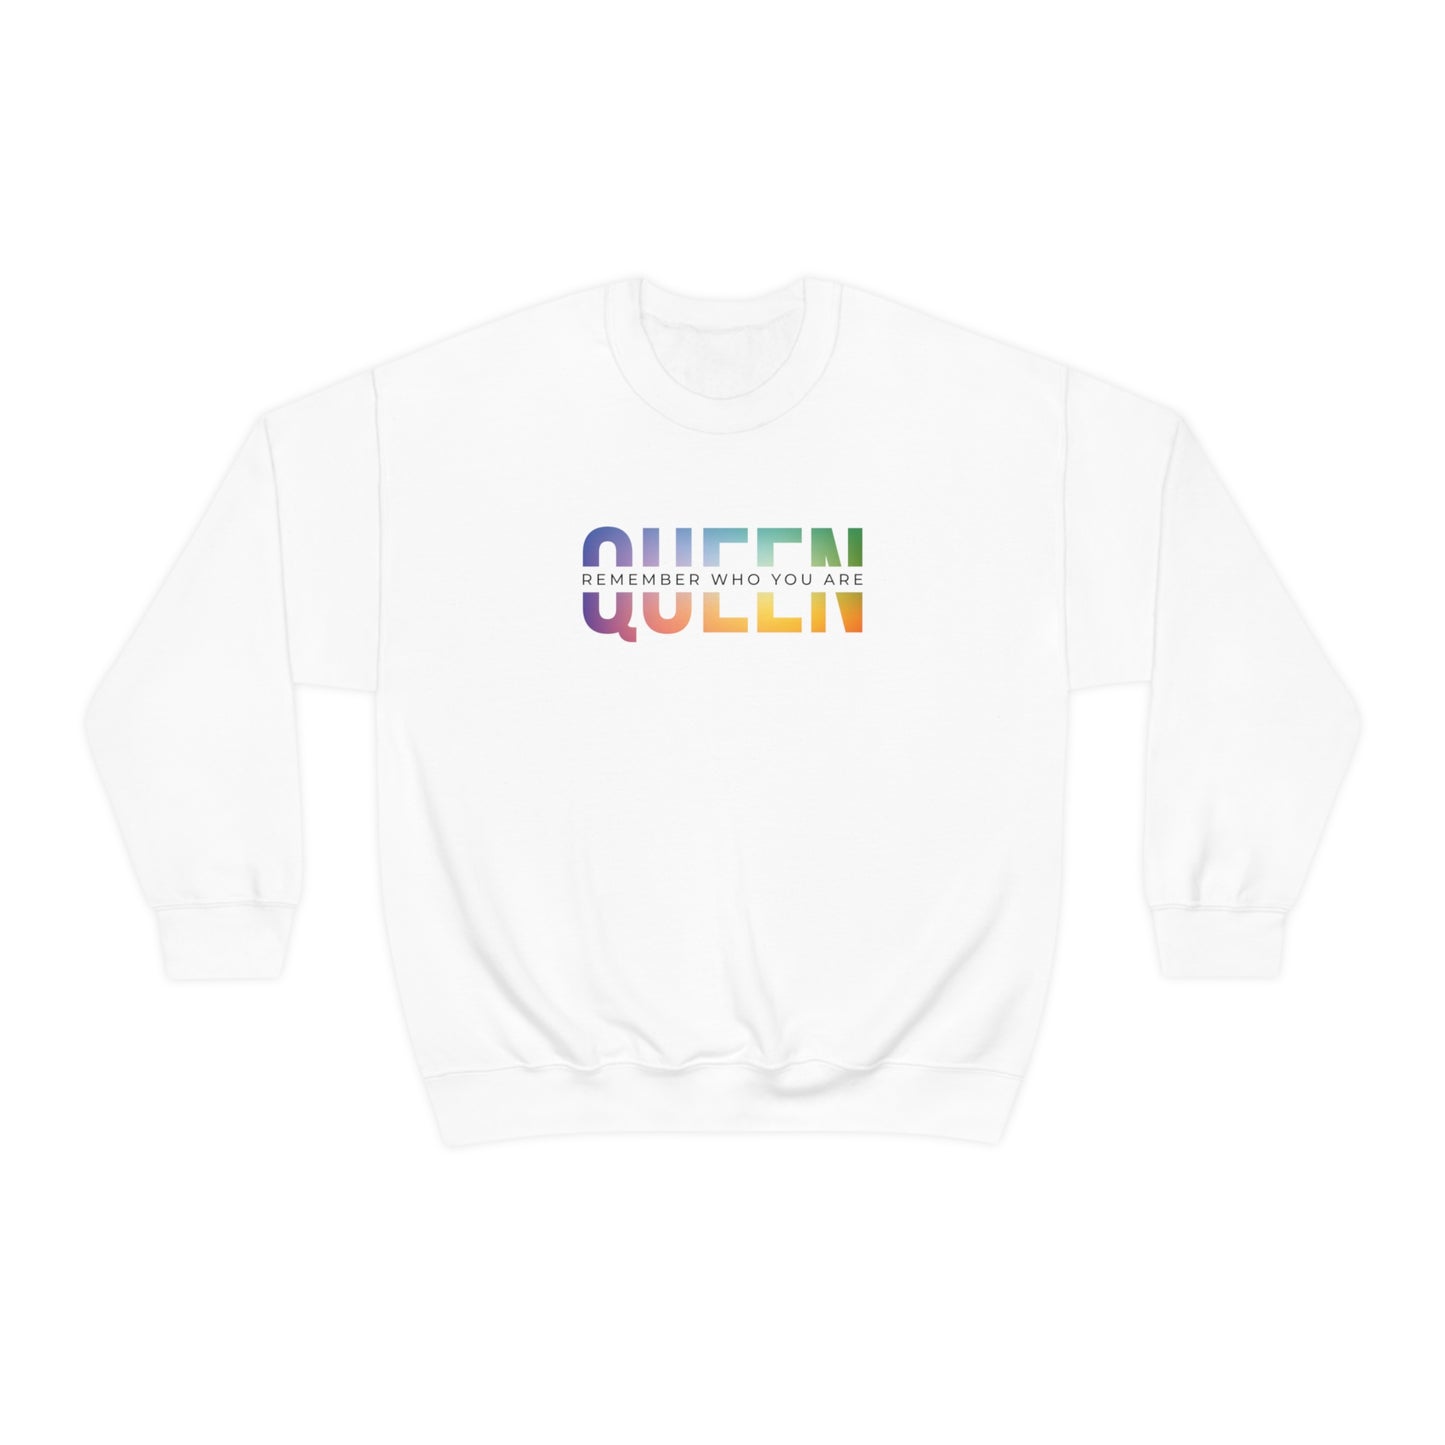 QUEEN Multi-color Crewneck Sweatshirt